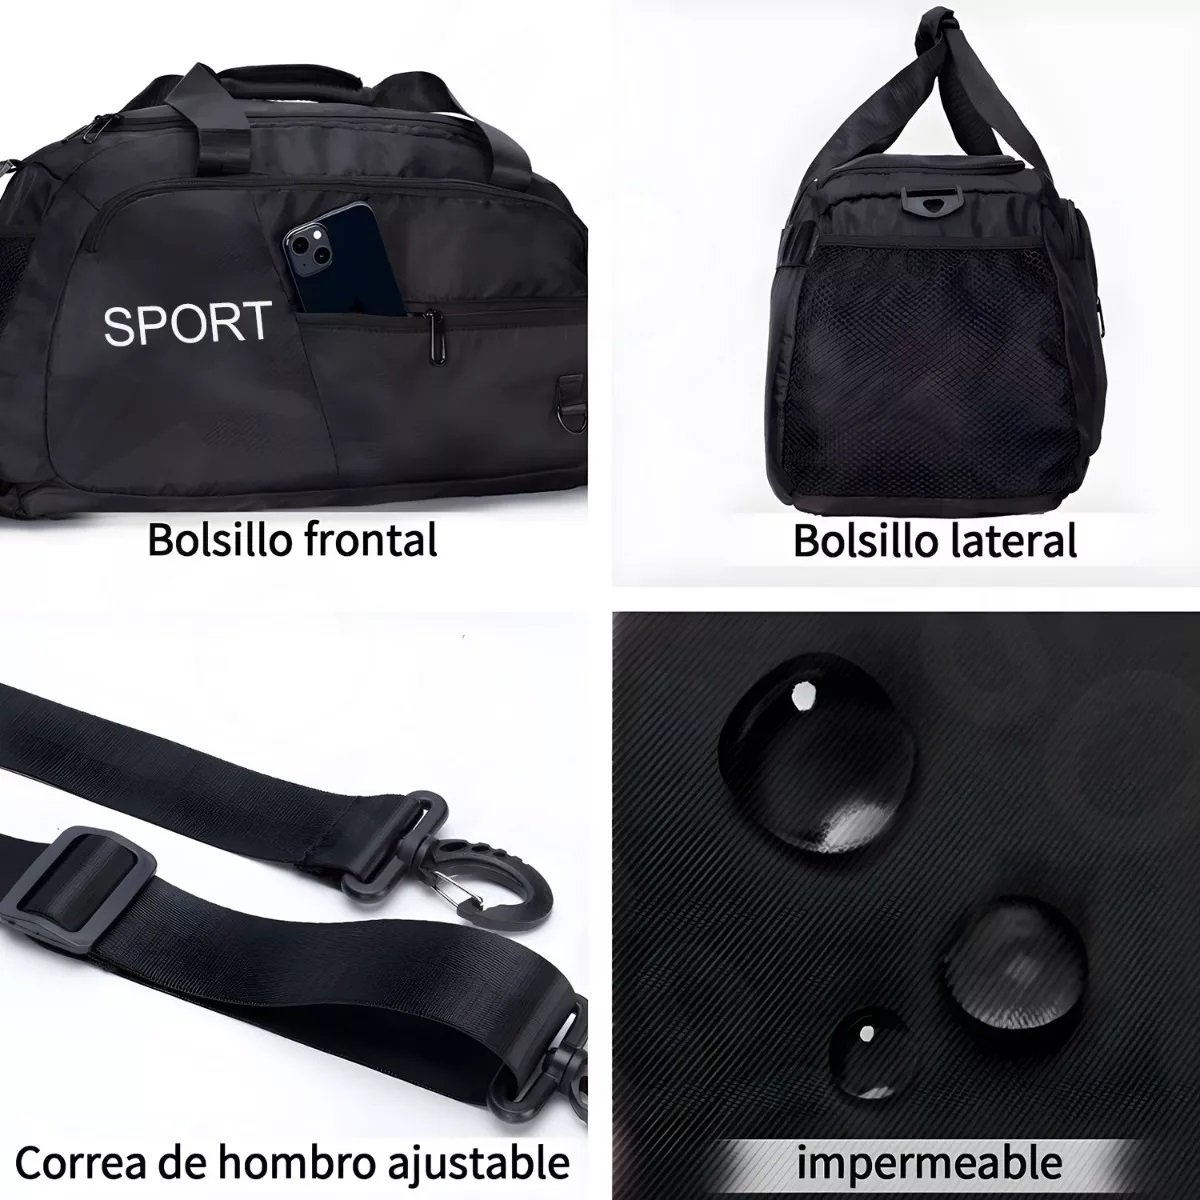 Hombre/Mujer Adidas Bolsa De Deporte Con Ruedas Black / Black / White